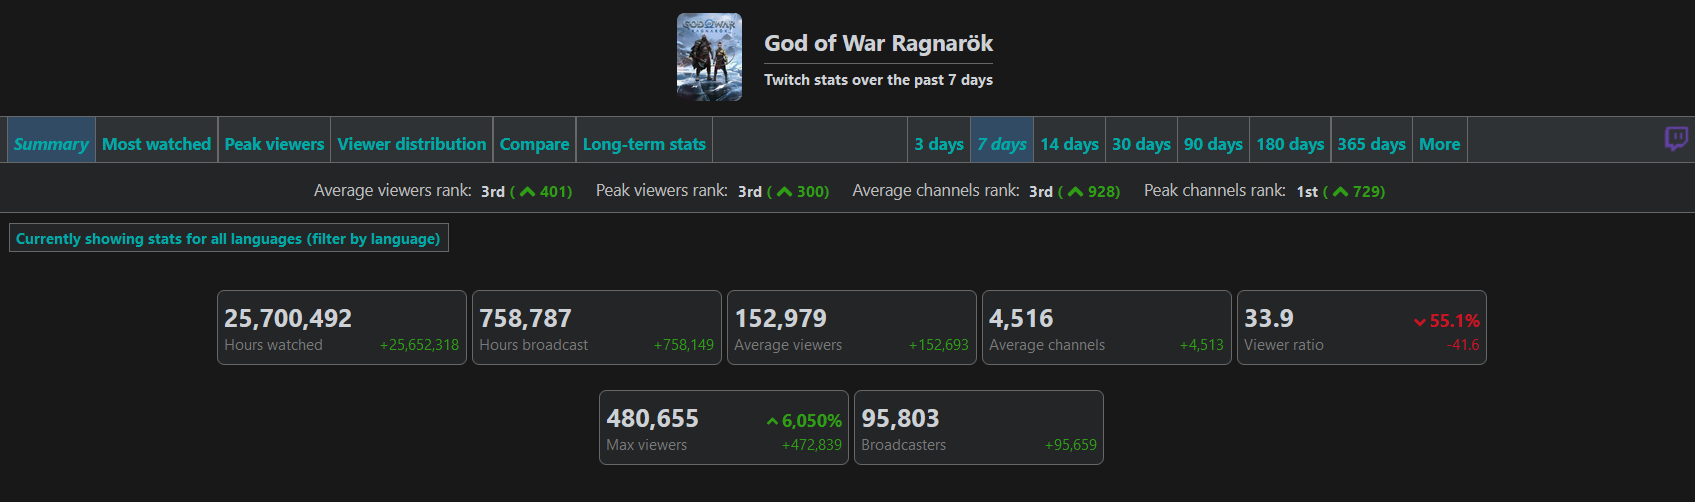 480 mil espectadores y 22 millones de horas de visionado: Las estadísticas de God of War Ragnarok en Twitch muestran el interés de los fans por el juego-2